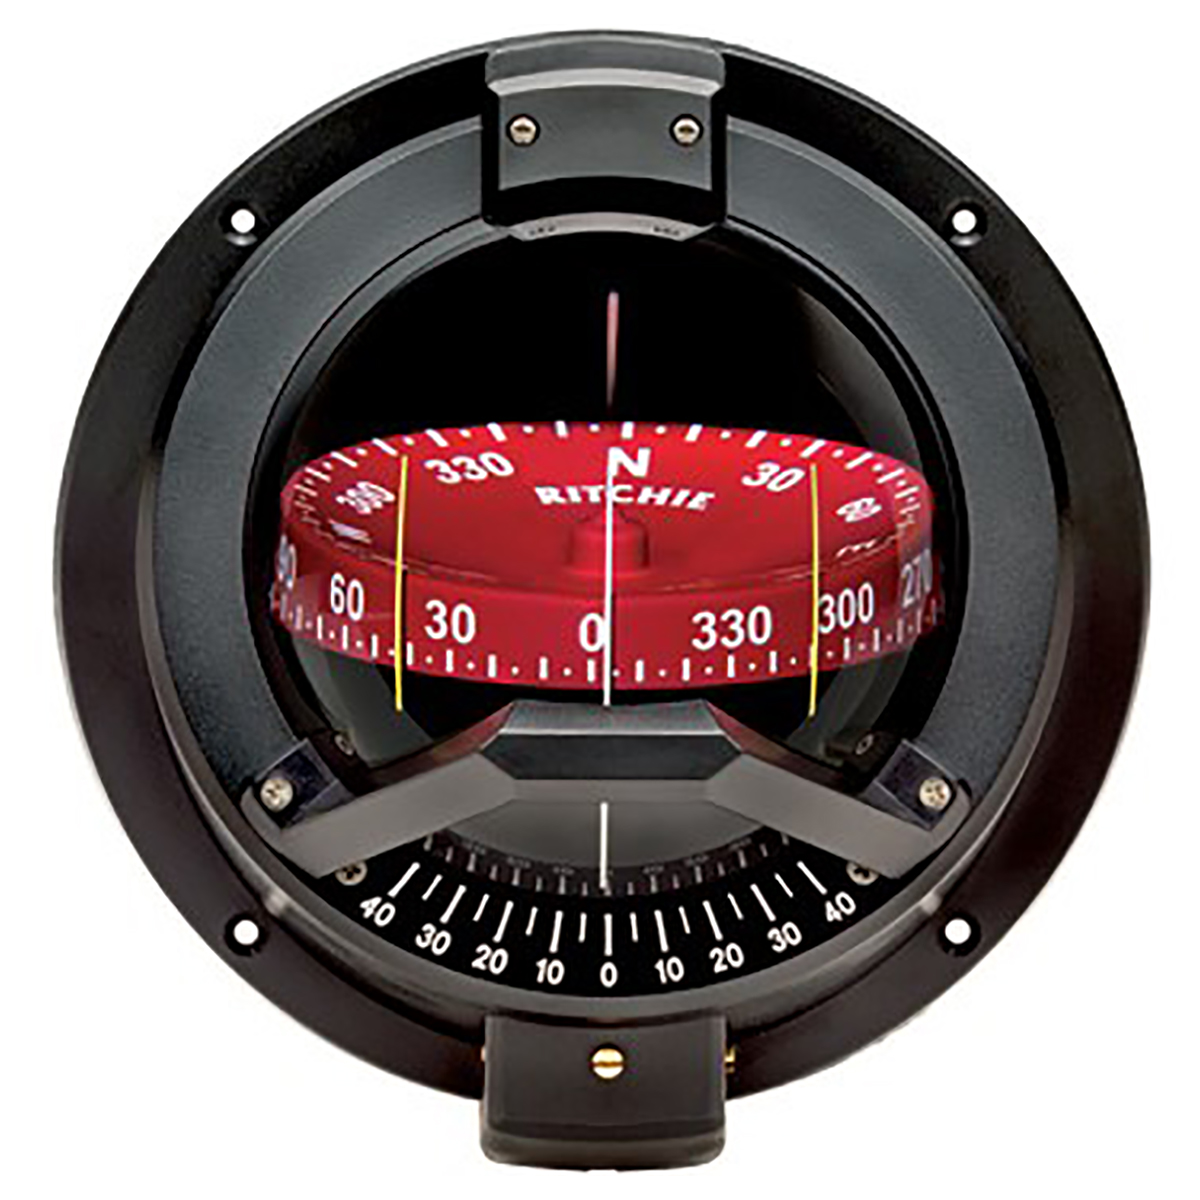 Компас Ritchie Navigation Navigator BN-202 картушка 115мм 12В 176x184x159мм врезной вертикальный с конической картушкой чёрный/красный